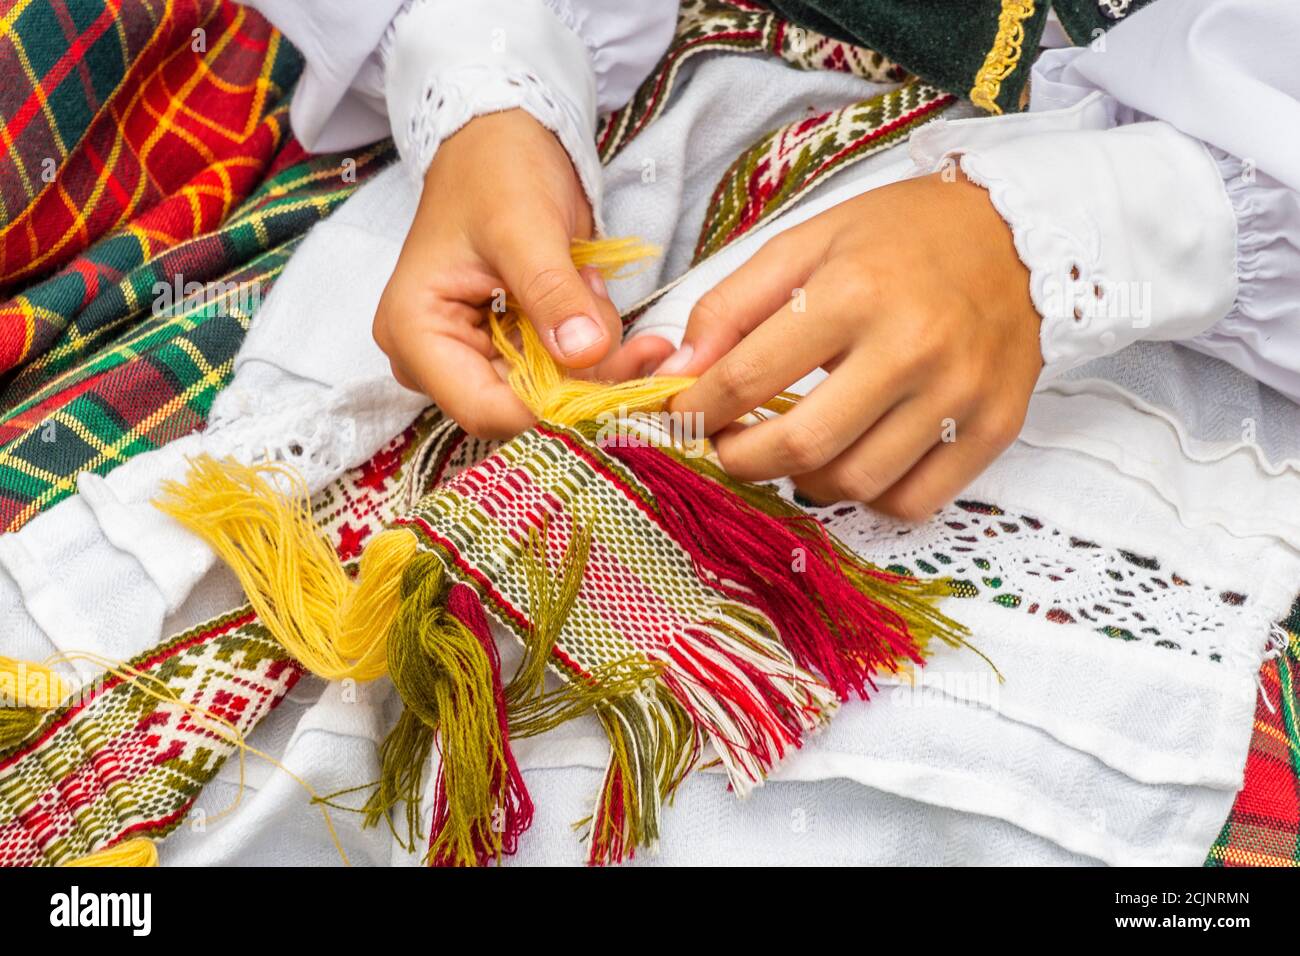 https://c8.alamy.com/compde/2cjnrmn/litauische-nationalkleid-ornament-madchen-in-traditionellen-kleidern-litauisch-gekleidet-2cjnrmn.jpg